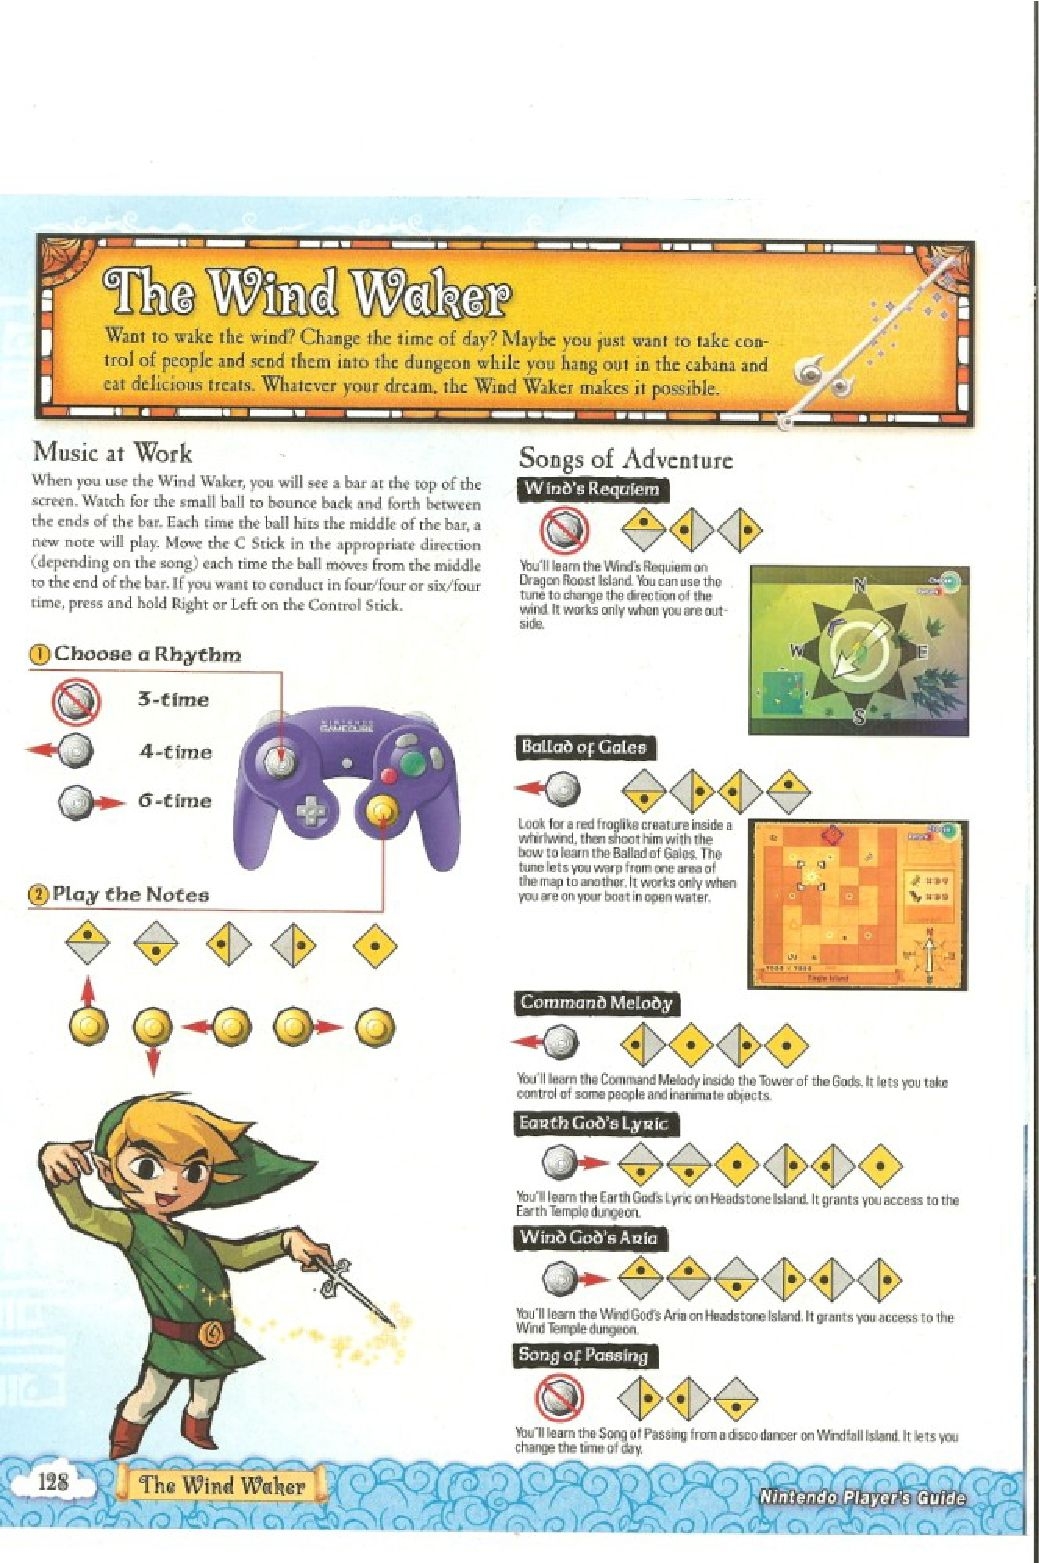 The Legend of Zelda - wind waker - Strategy Guide 130